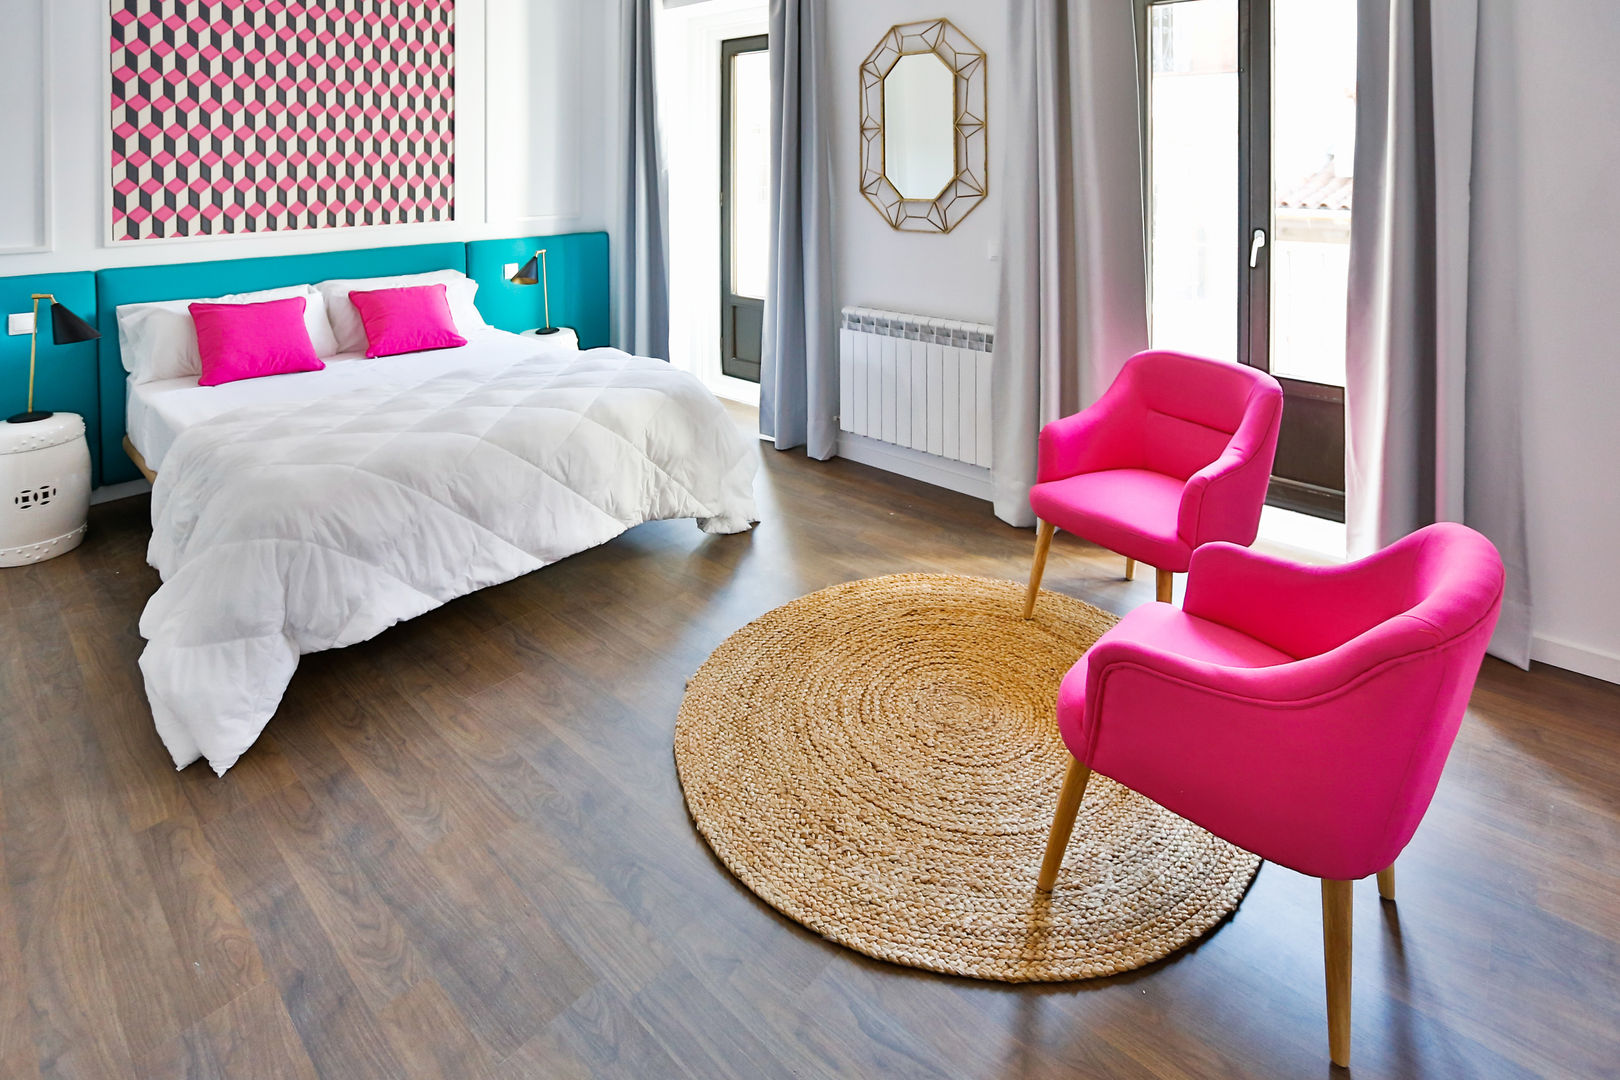 Dormitorio suite StudioBMK Dormitorios modernos: Ideas, imágenes y decoración